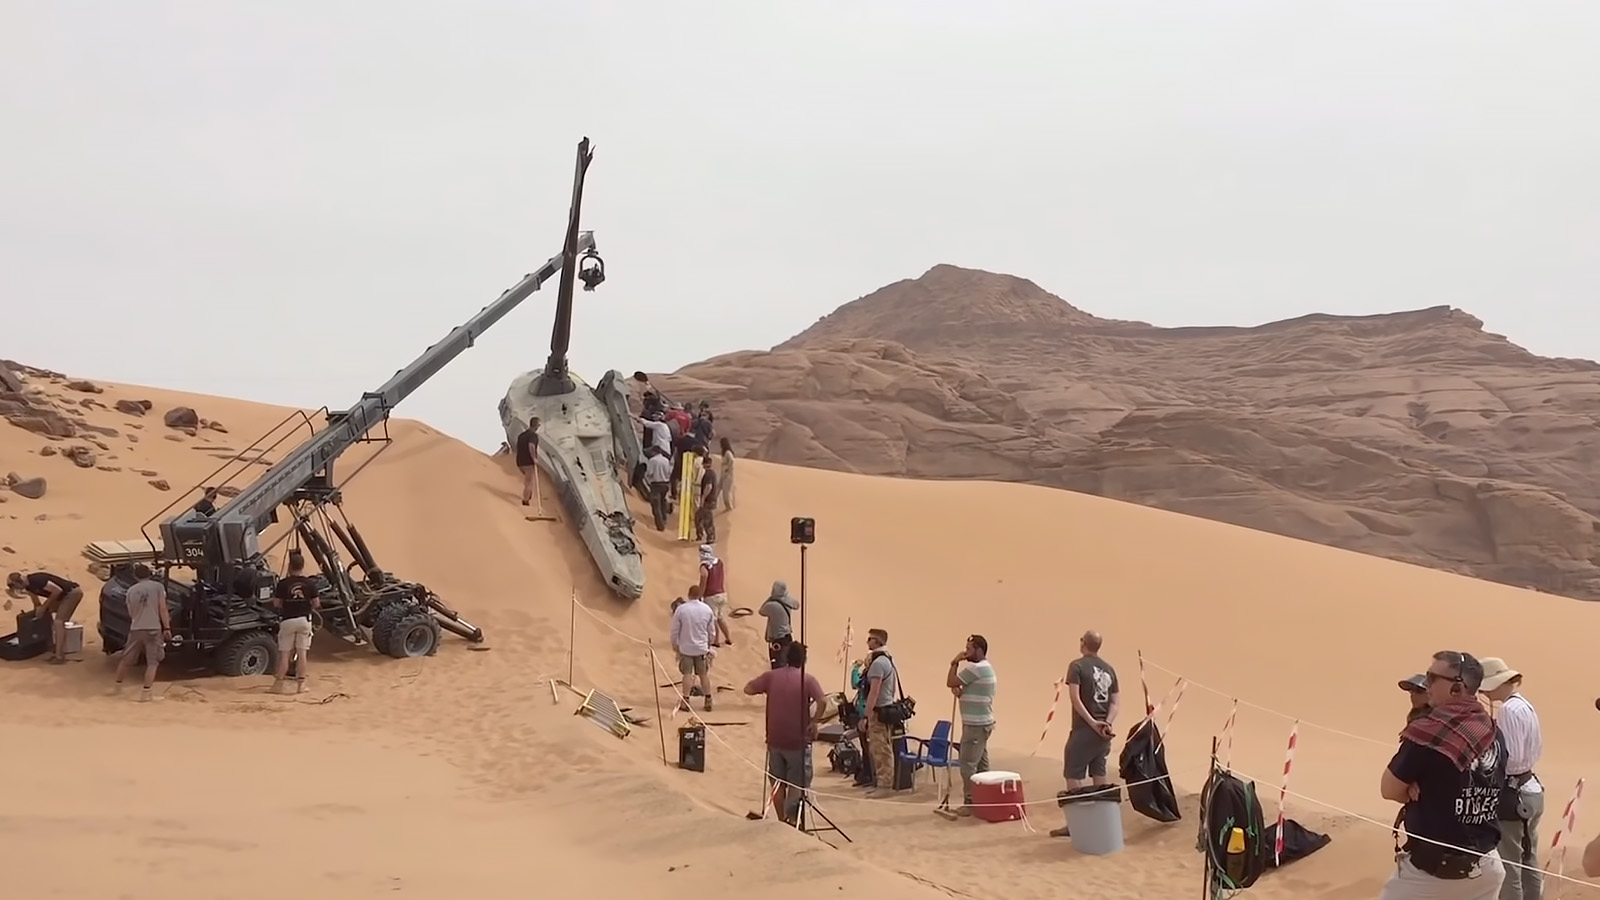 Filming the ornithopter crash set for Dune. Image © Warner Bros.